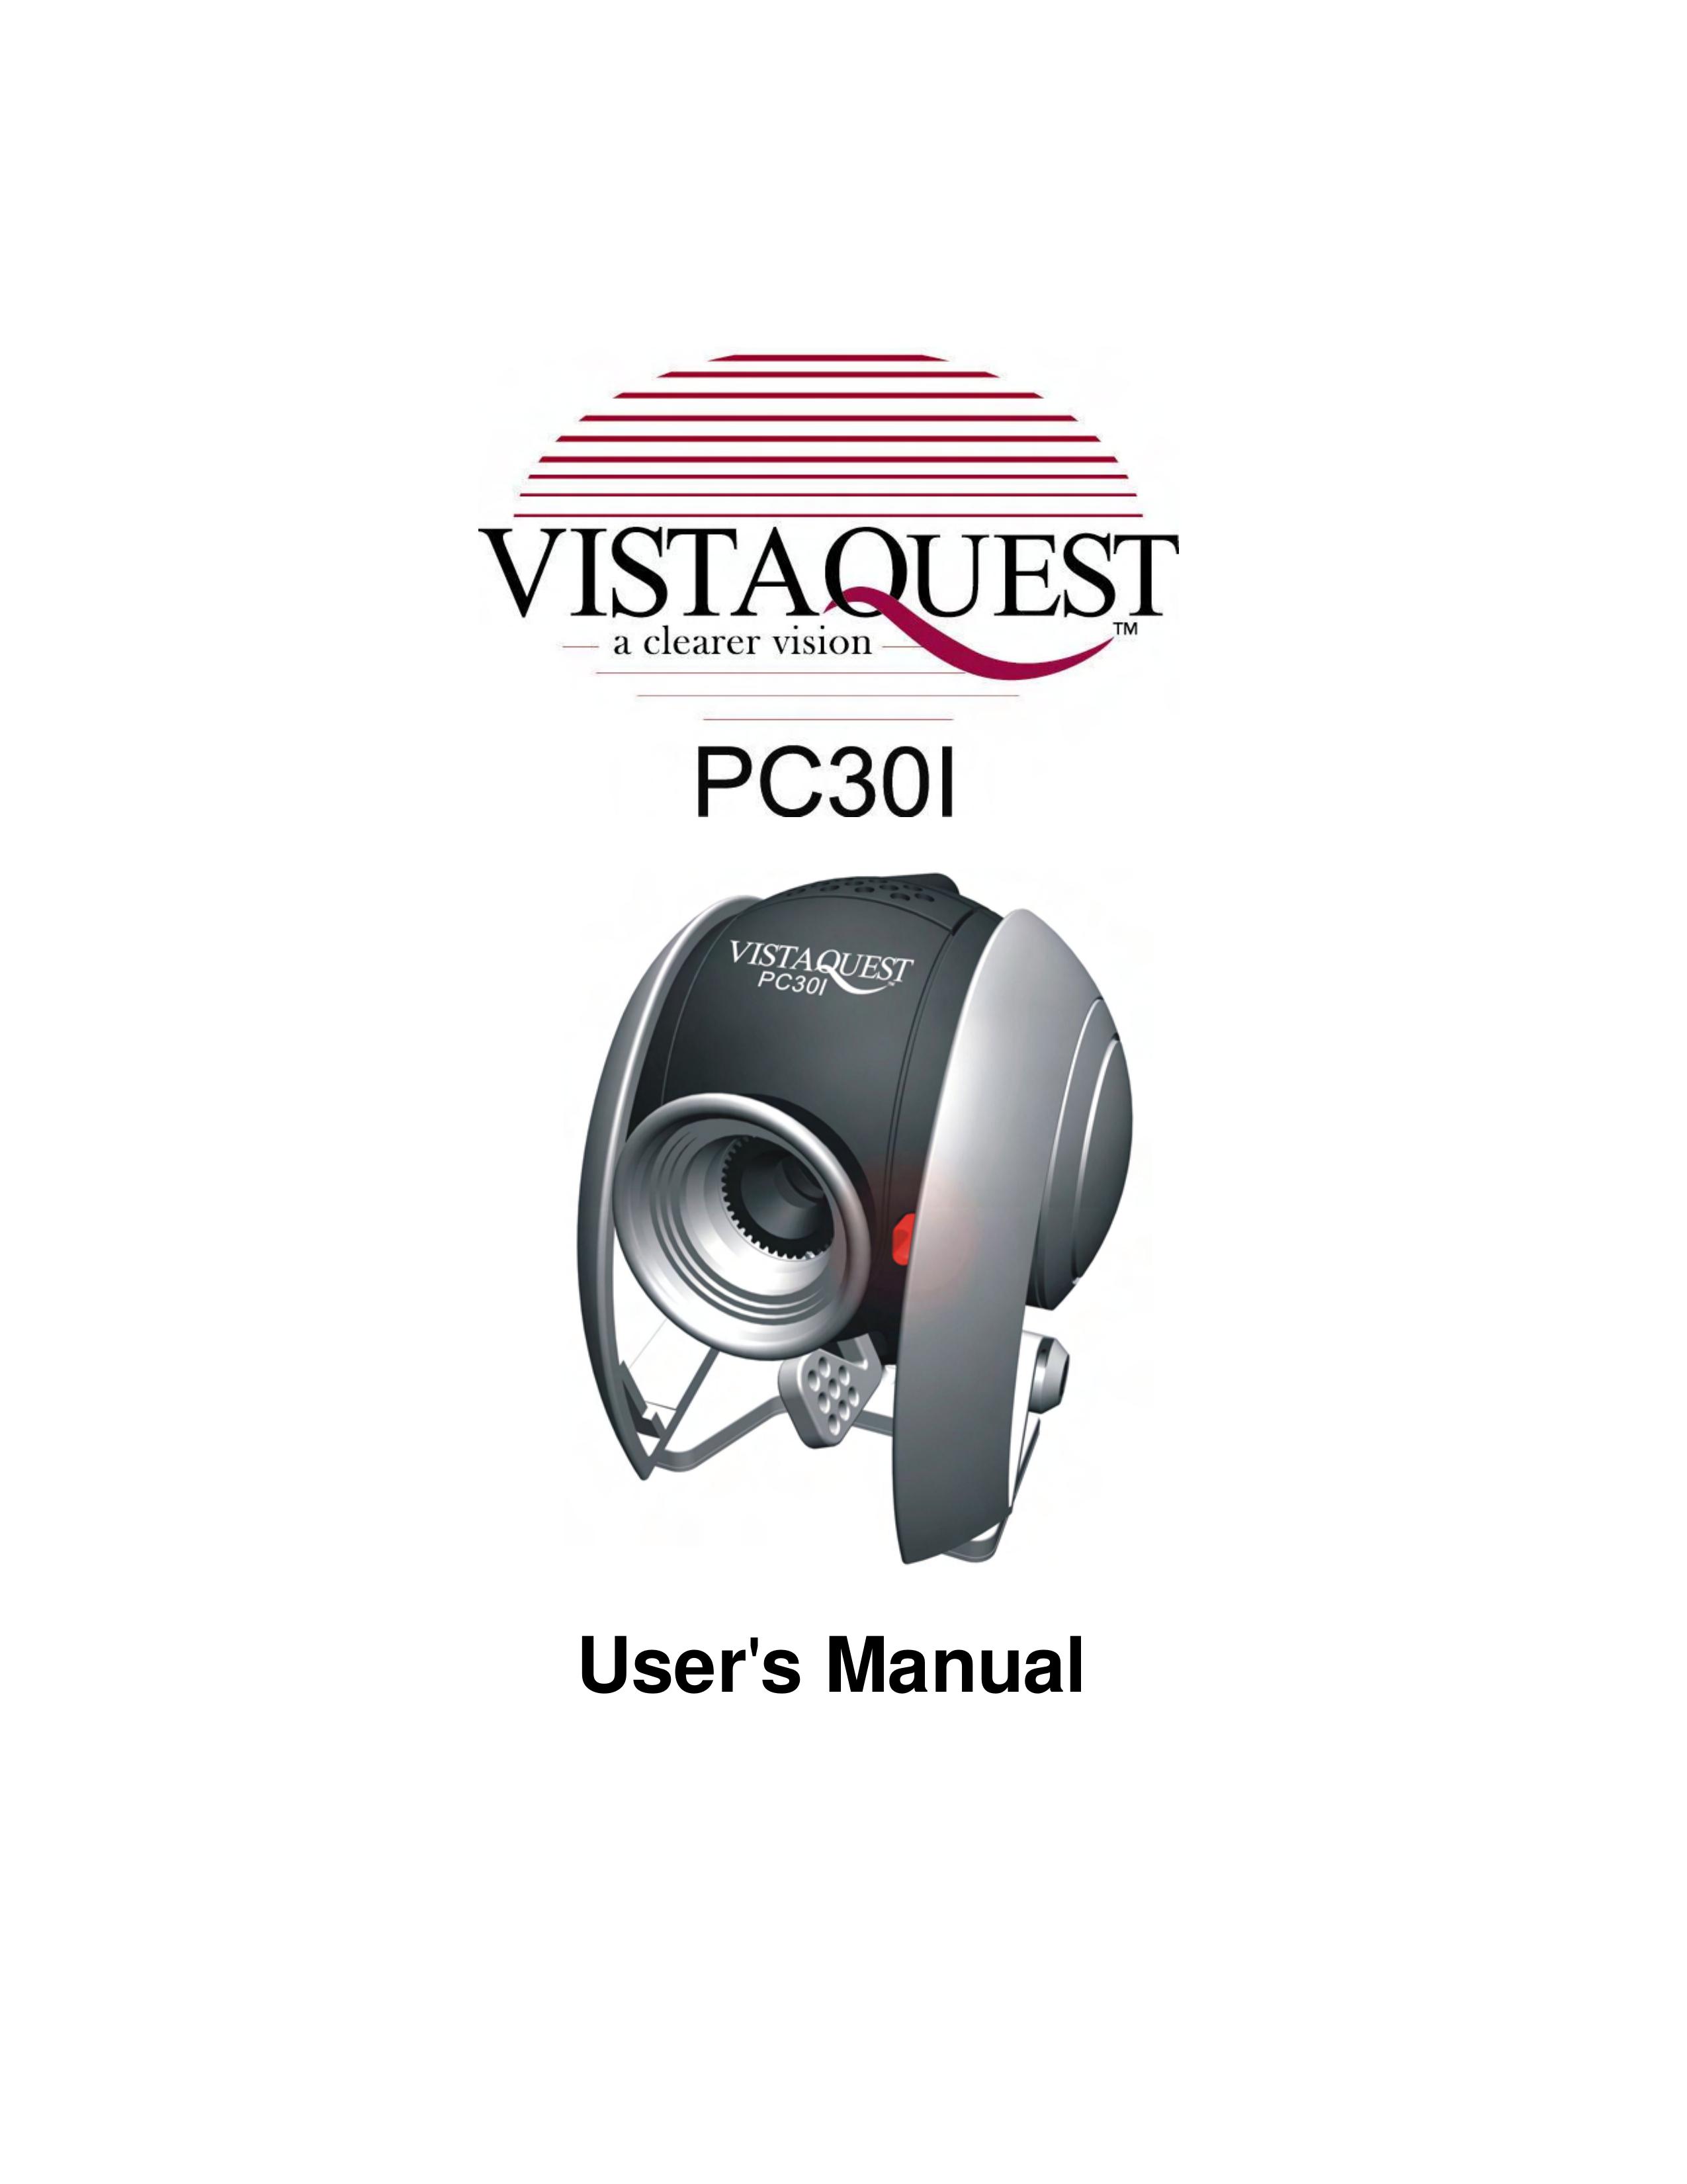 VistaQuest PC30I Digital Camera User Manual